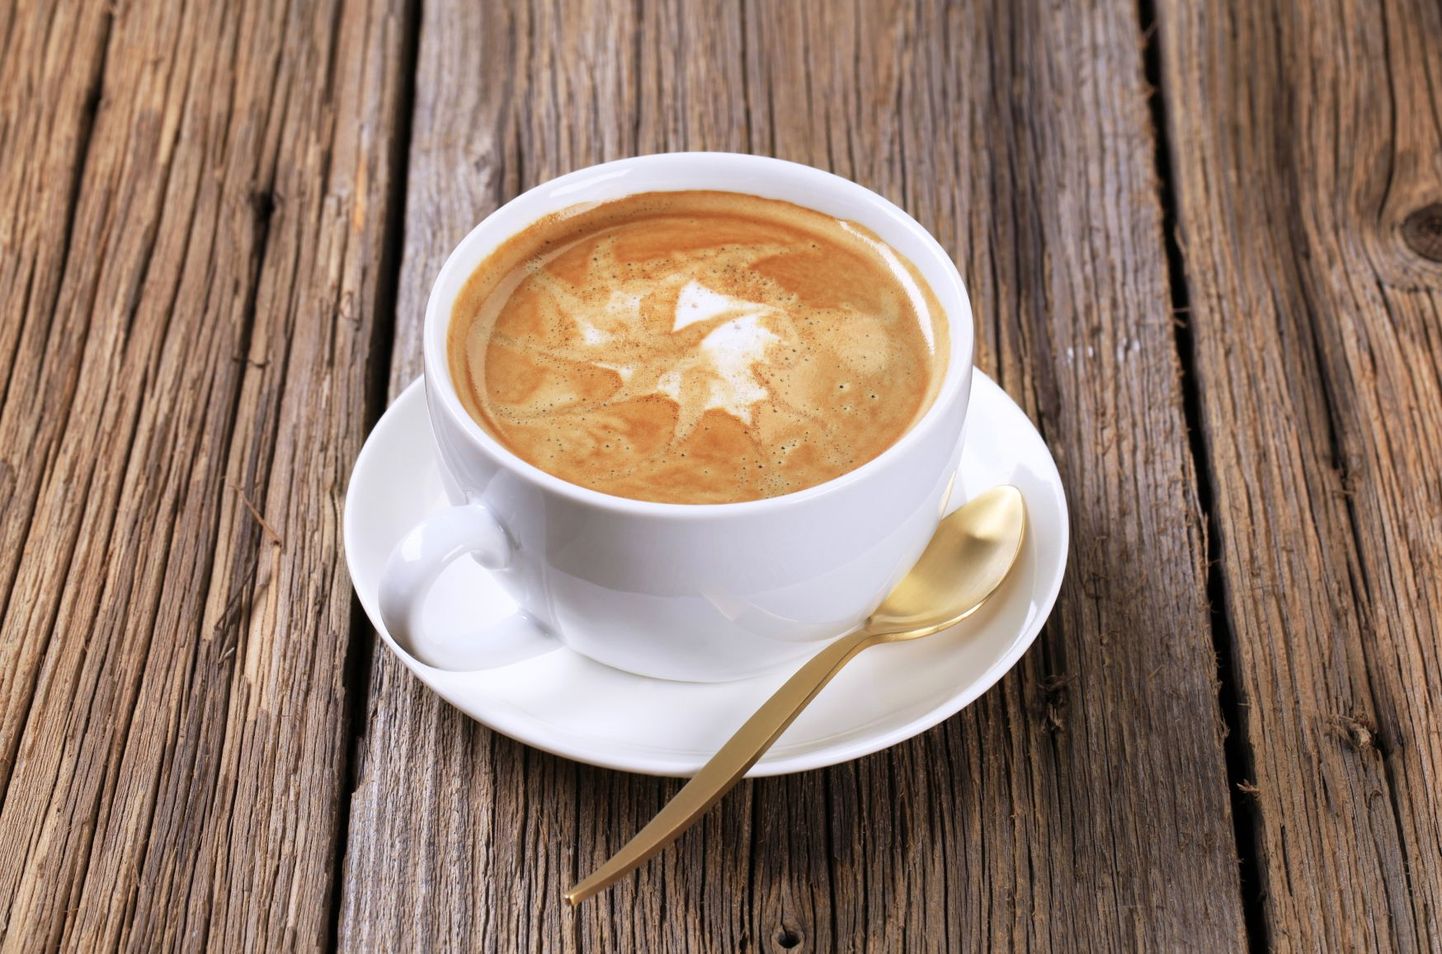 Latte kohvi pilte jagatakse Instagramis sageli.